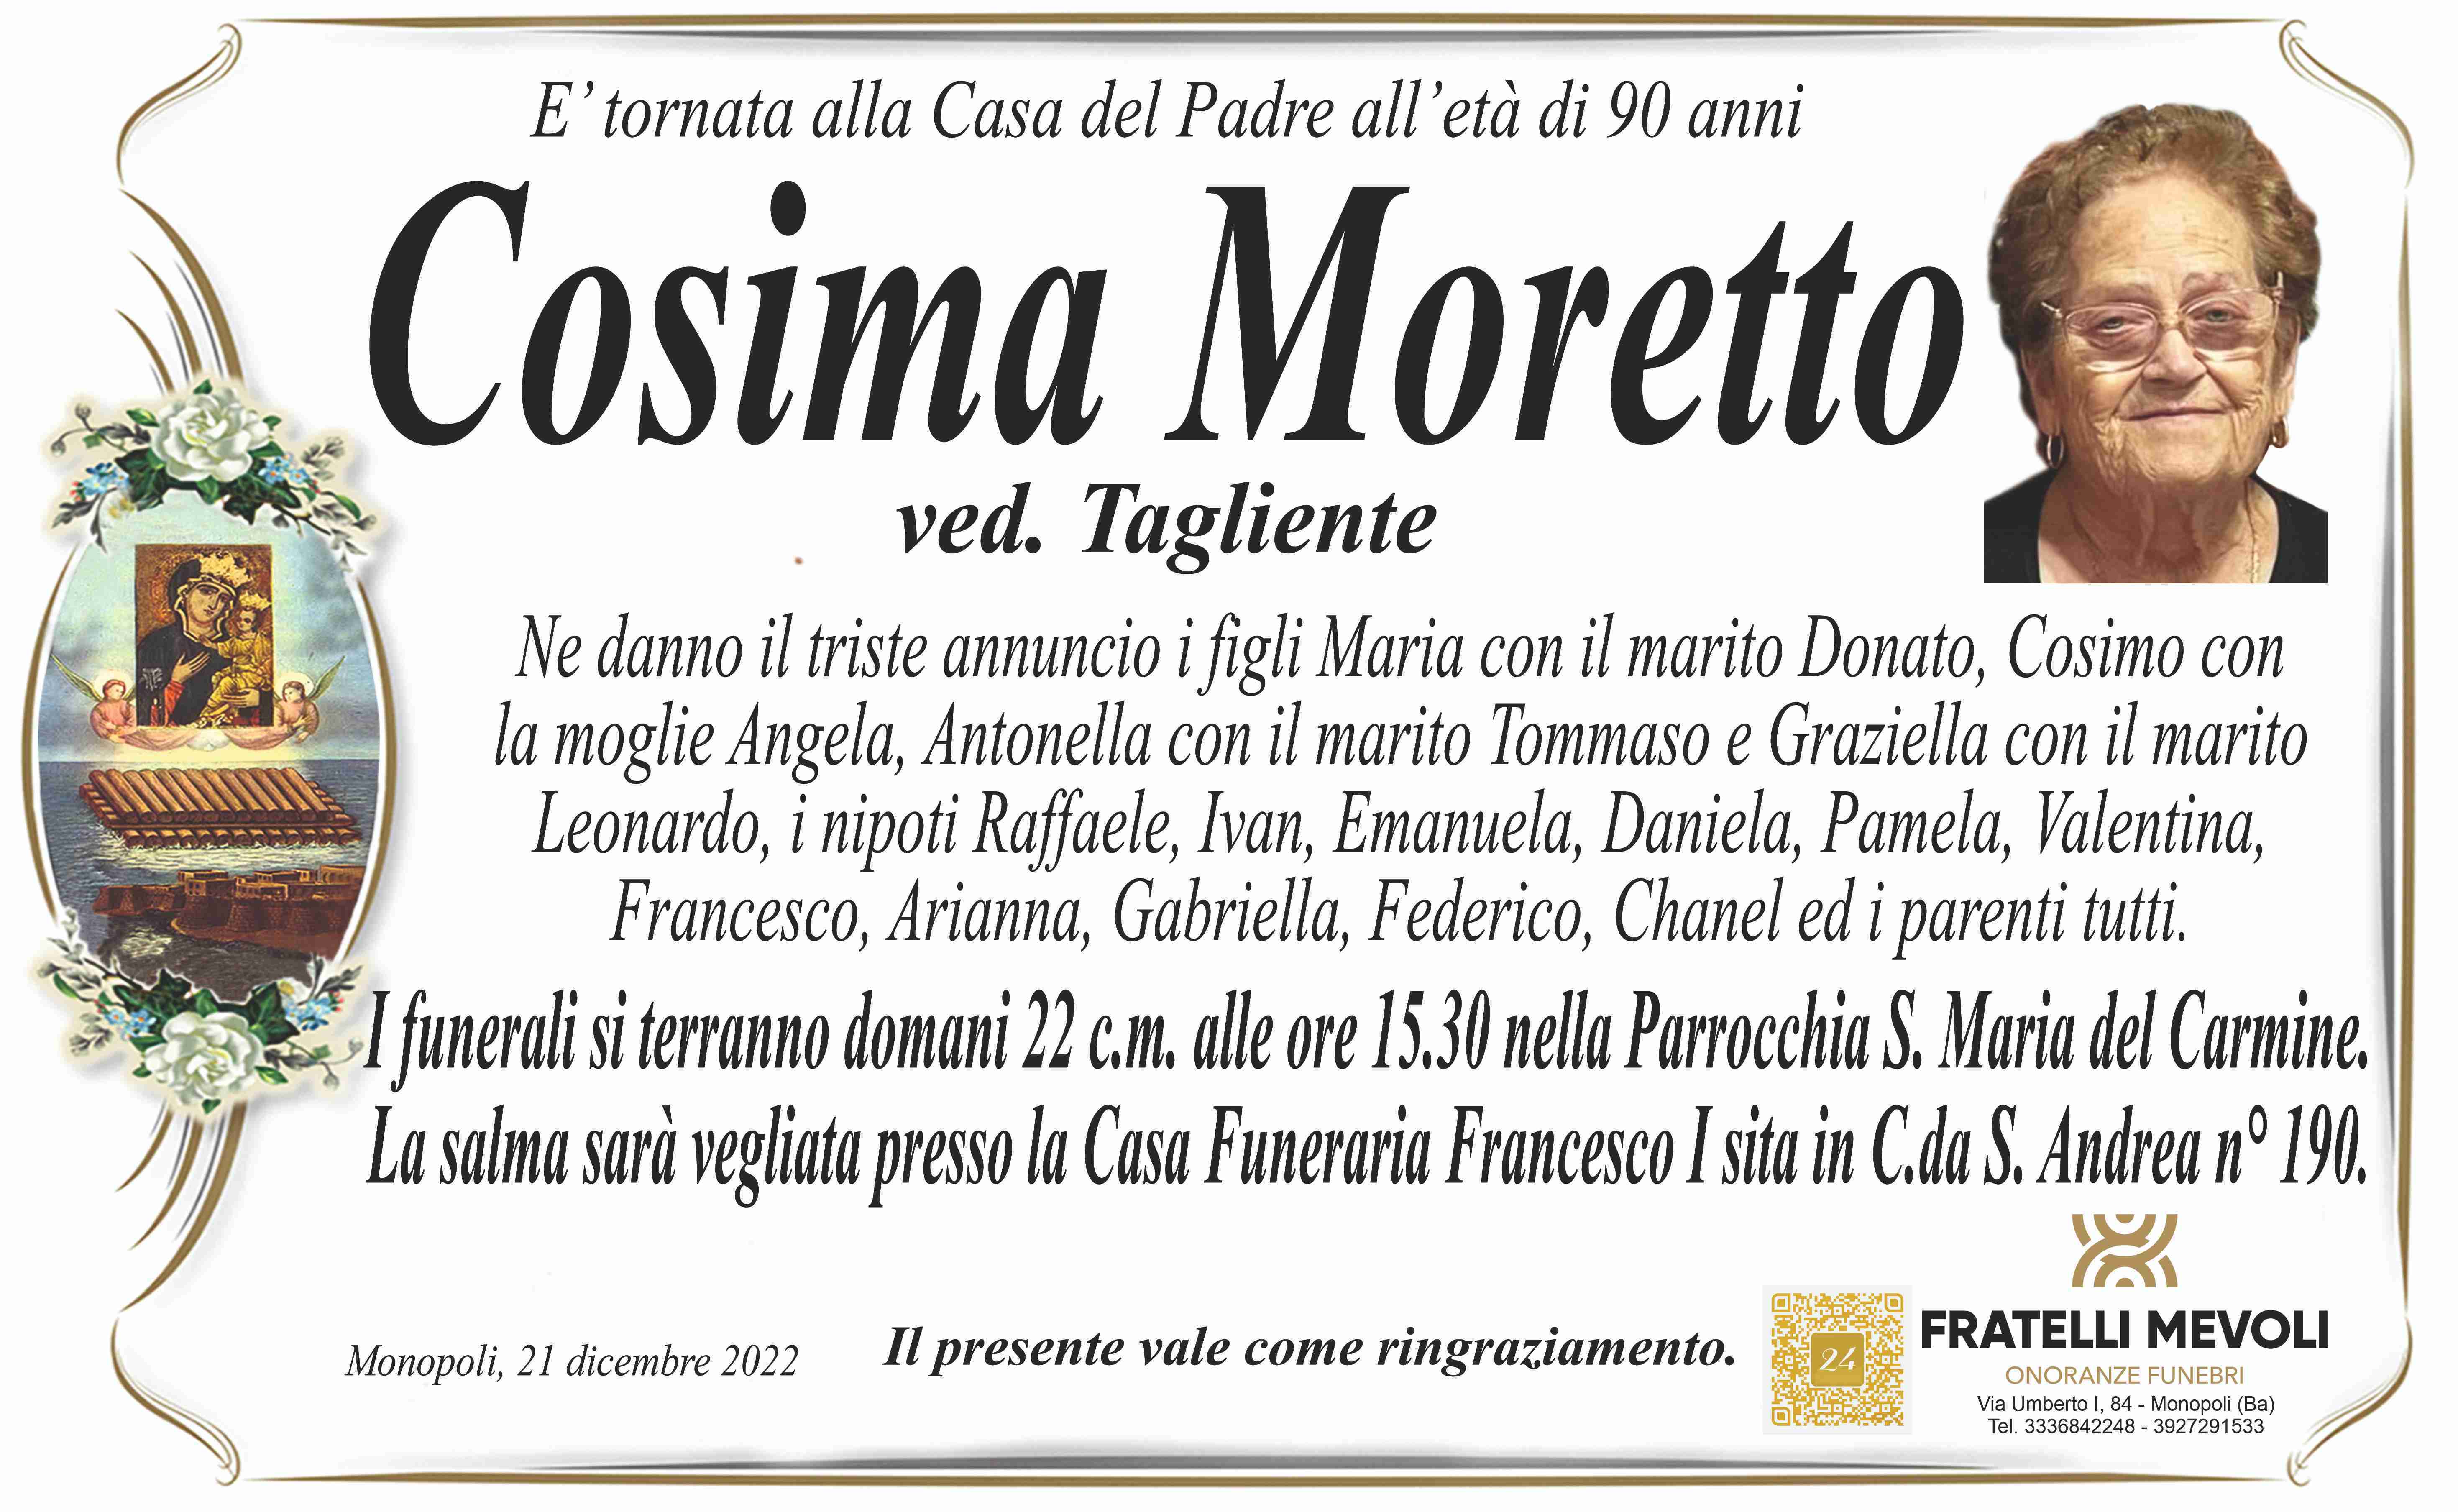 Cosima Moretto